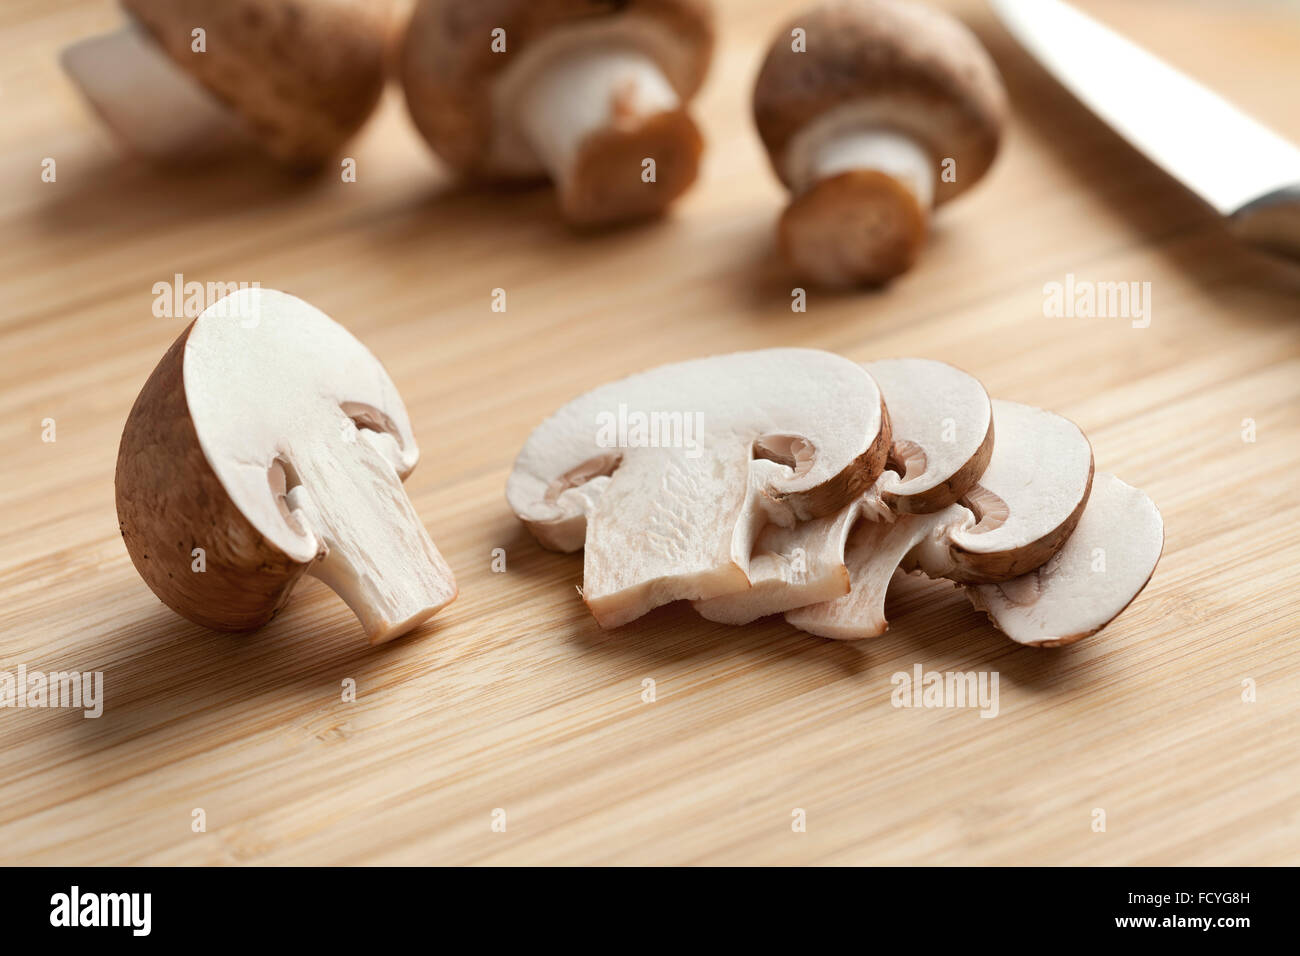 Castagne fresche fette di funghi sul bordo di taglio Foto Stock